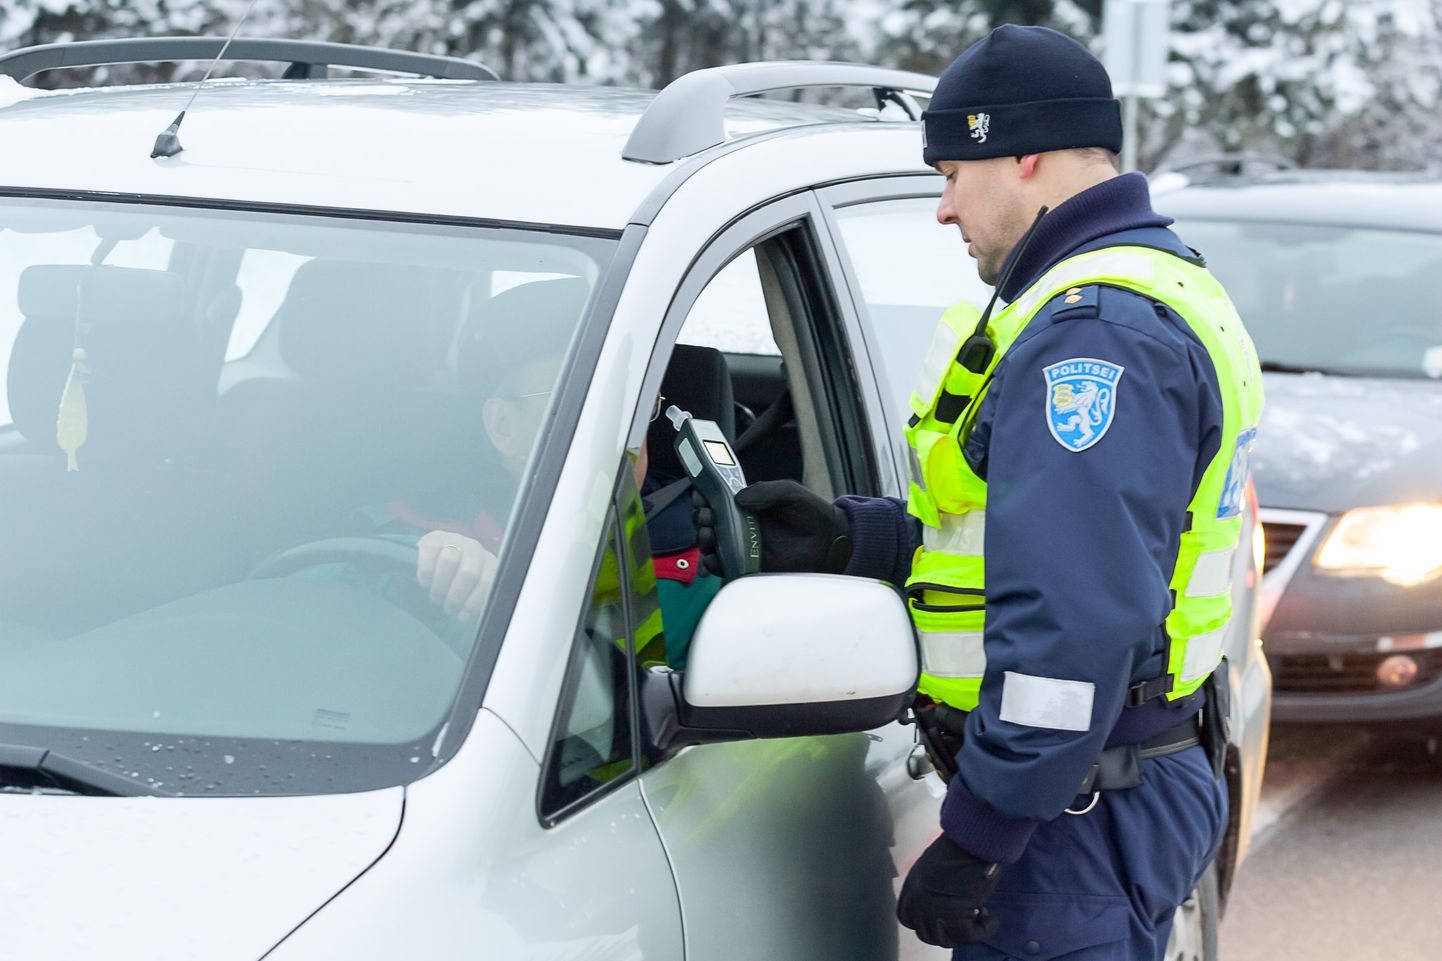 Eestis algab kriminaalvastutus joobes juhtimise eest, kui inimese ühes liitris väljahingatavas õhus on rohkem kui 0,75 milliliitrit alkoholi. Foto on illustratiivne ja pärineb mõne aasta taguselt Ida-Virumaal toimunud politsei puhumisreidilt.